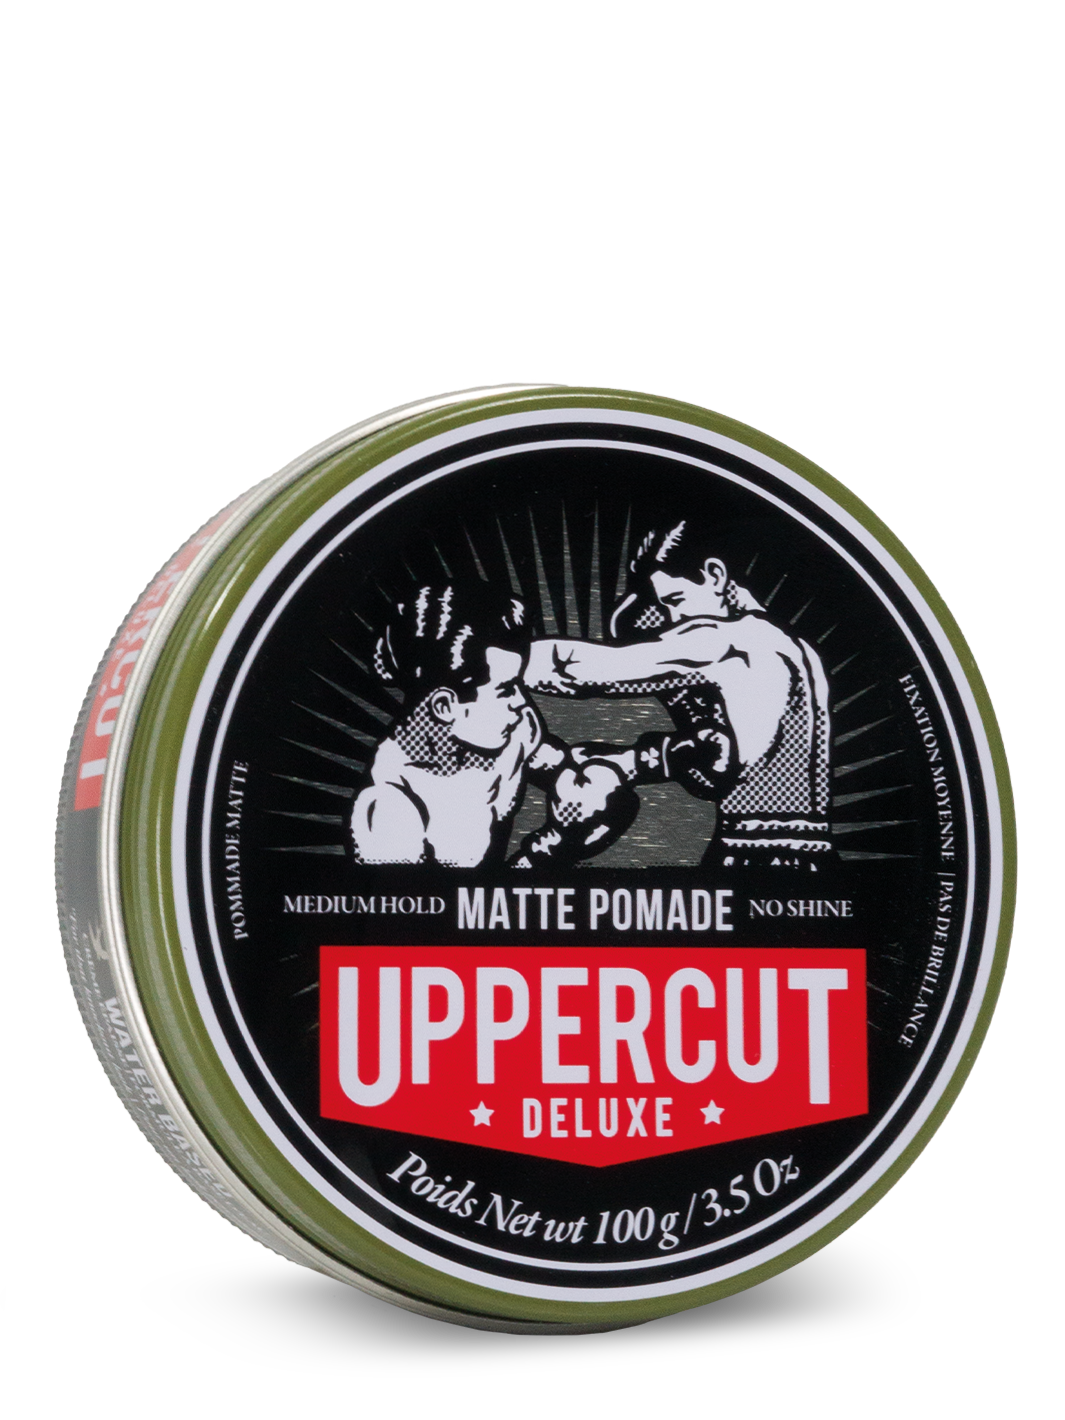 Uppercut Deluxe Matte Pomade Medium Hold 100g